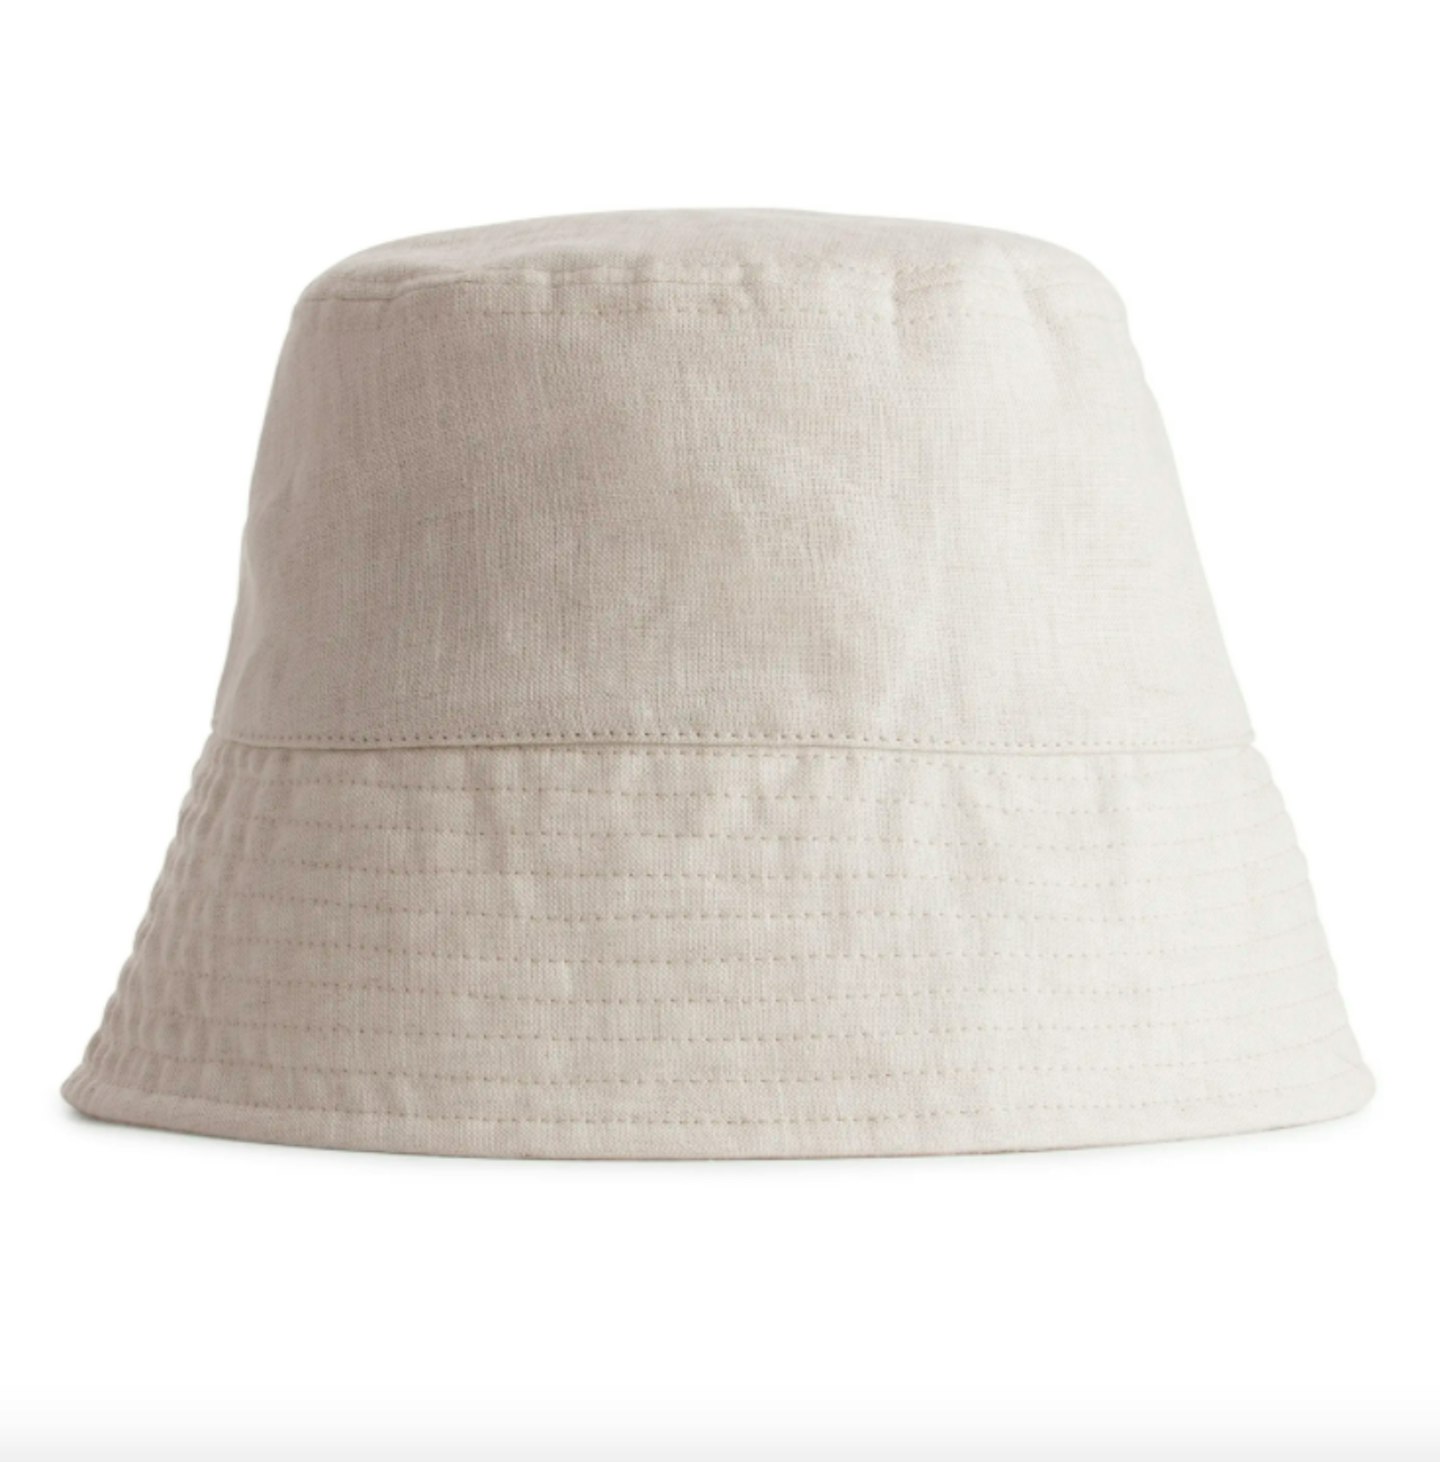 Arket, Linen Bucket Hat, £55